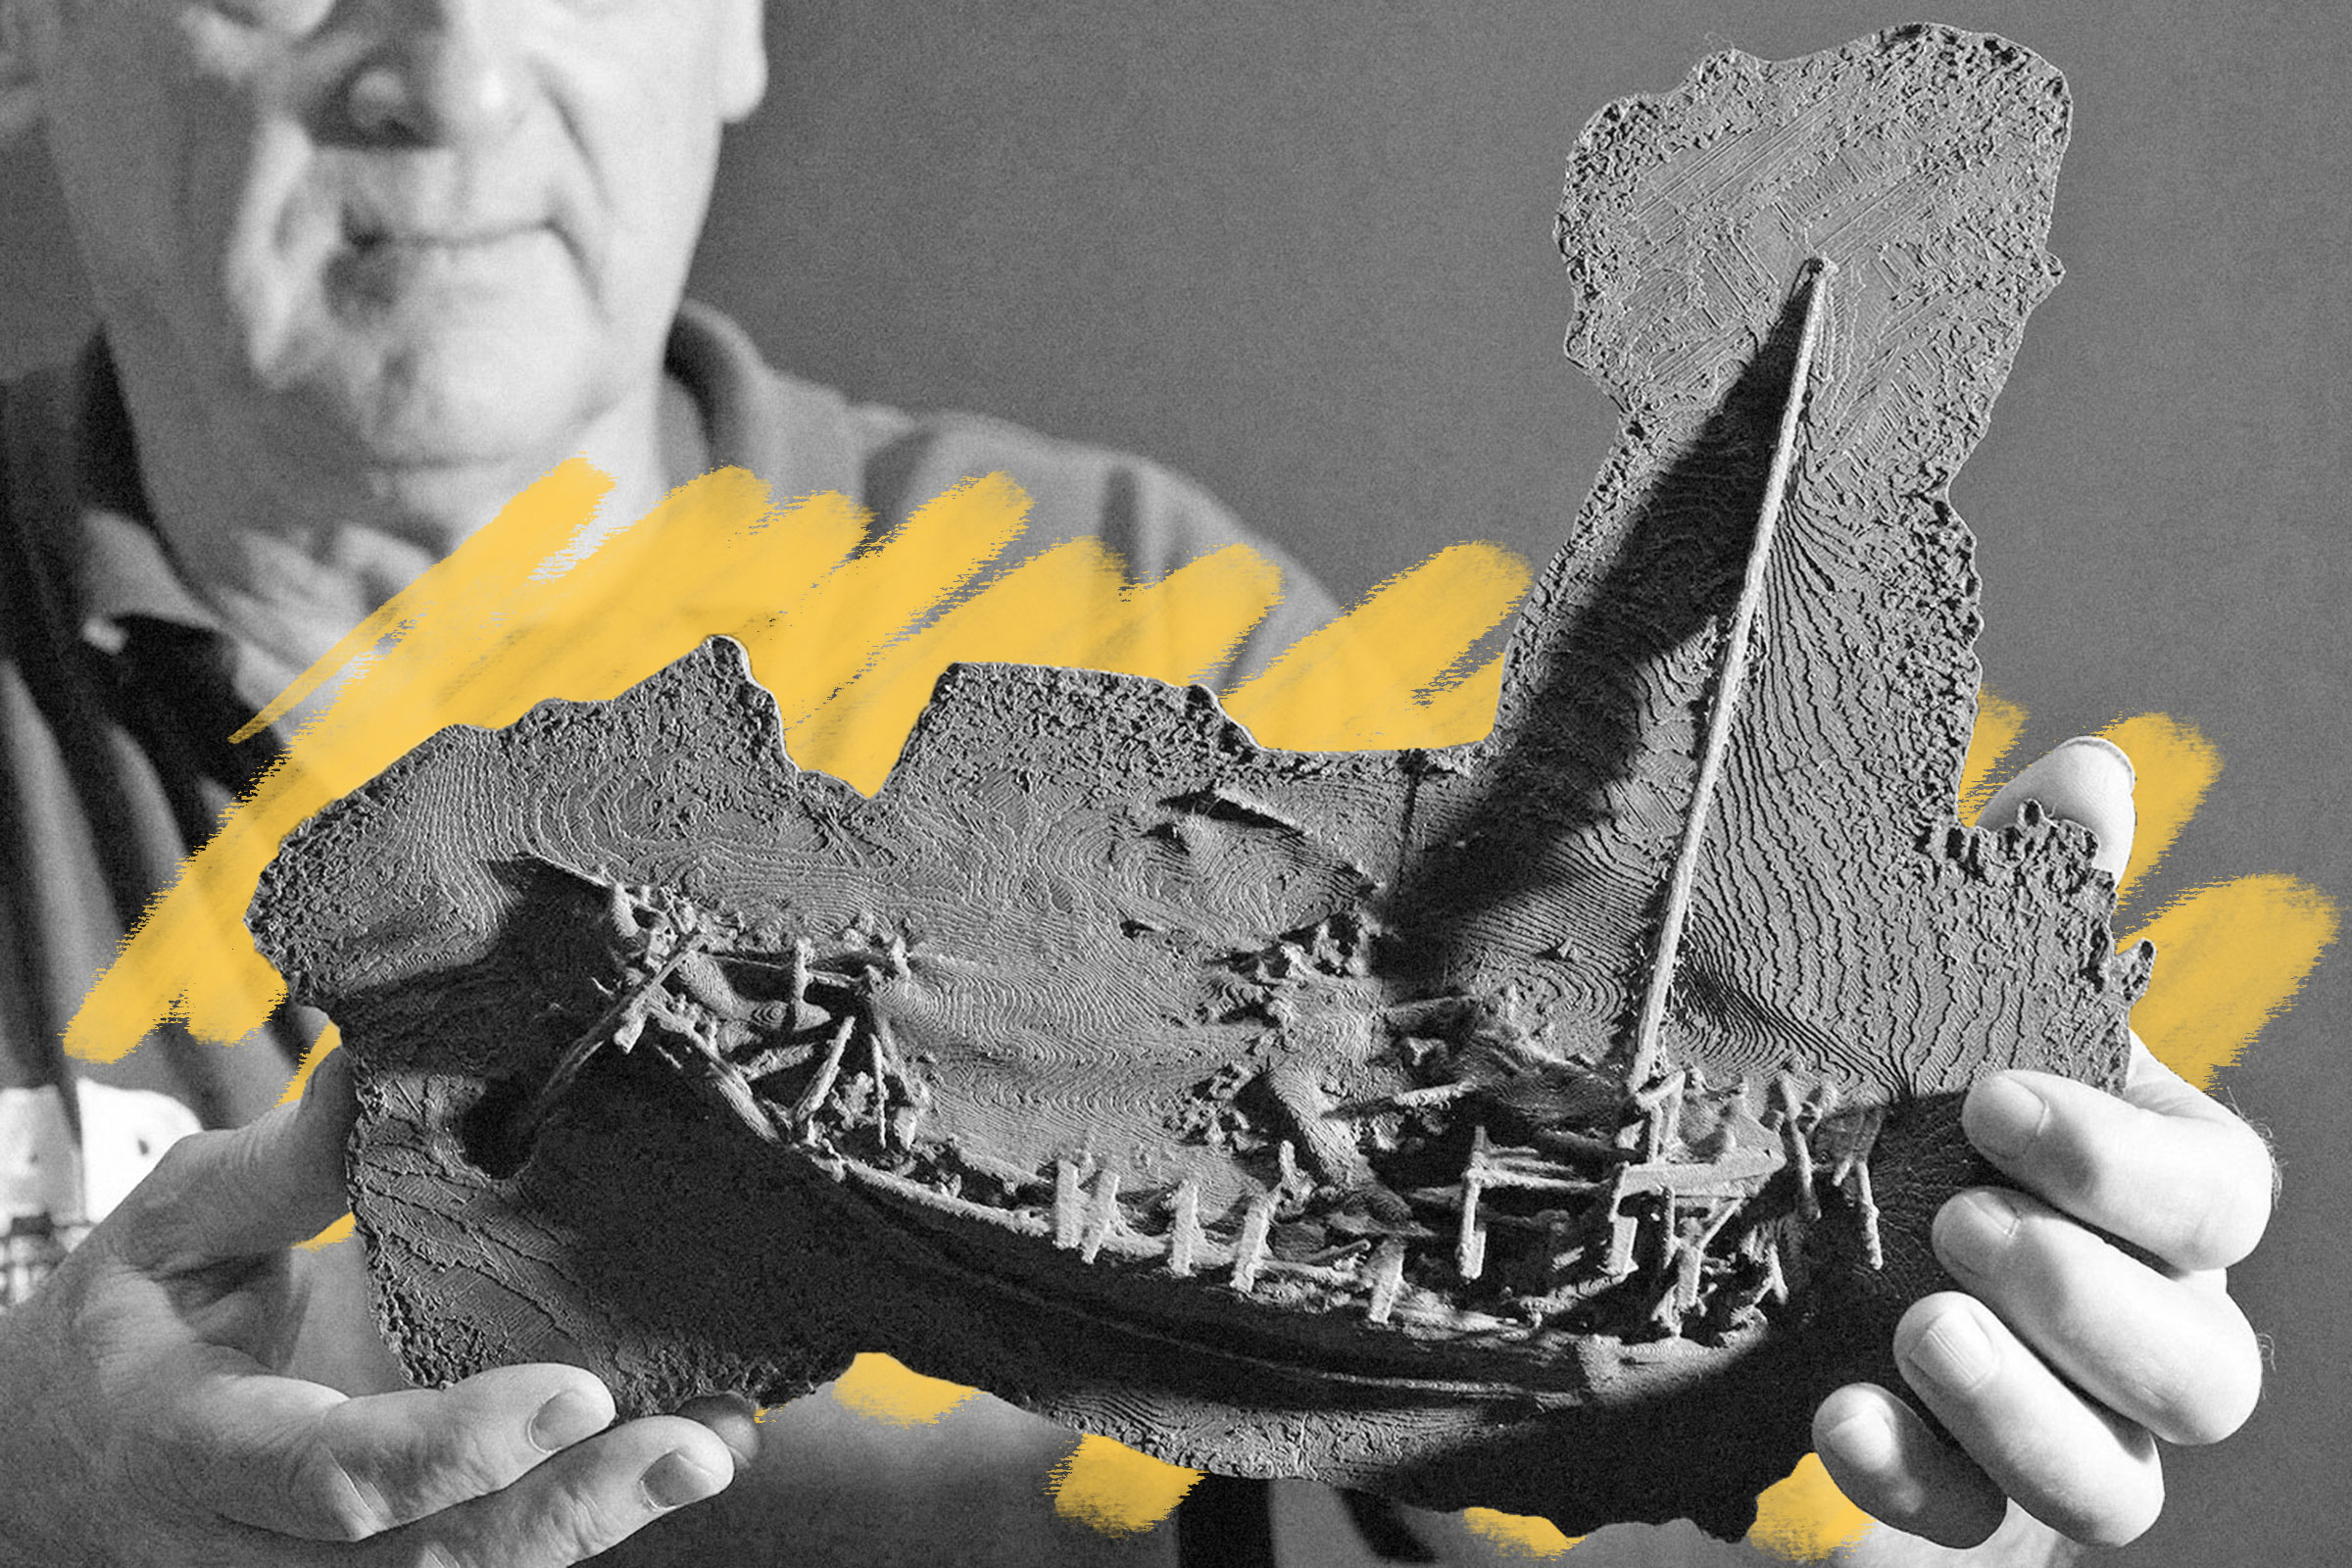 3D shipwreck model